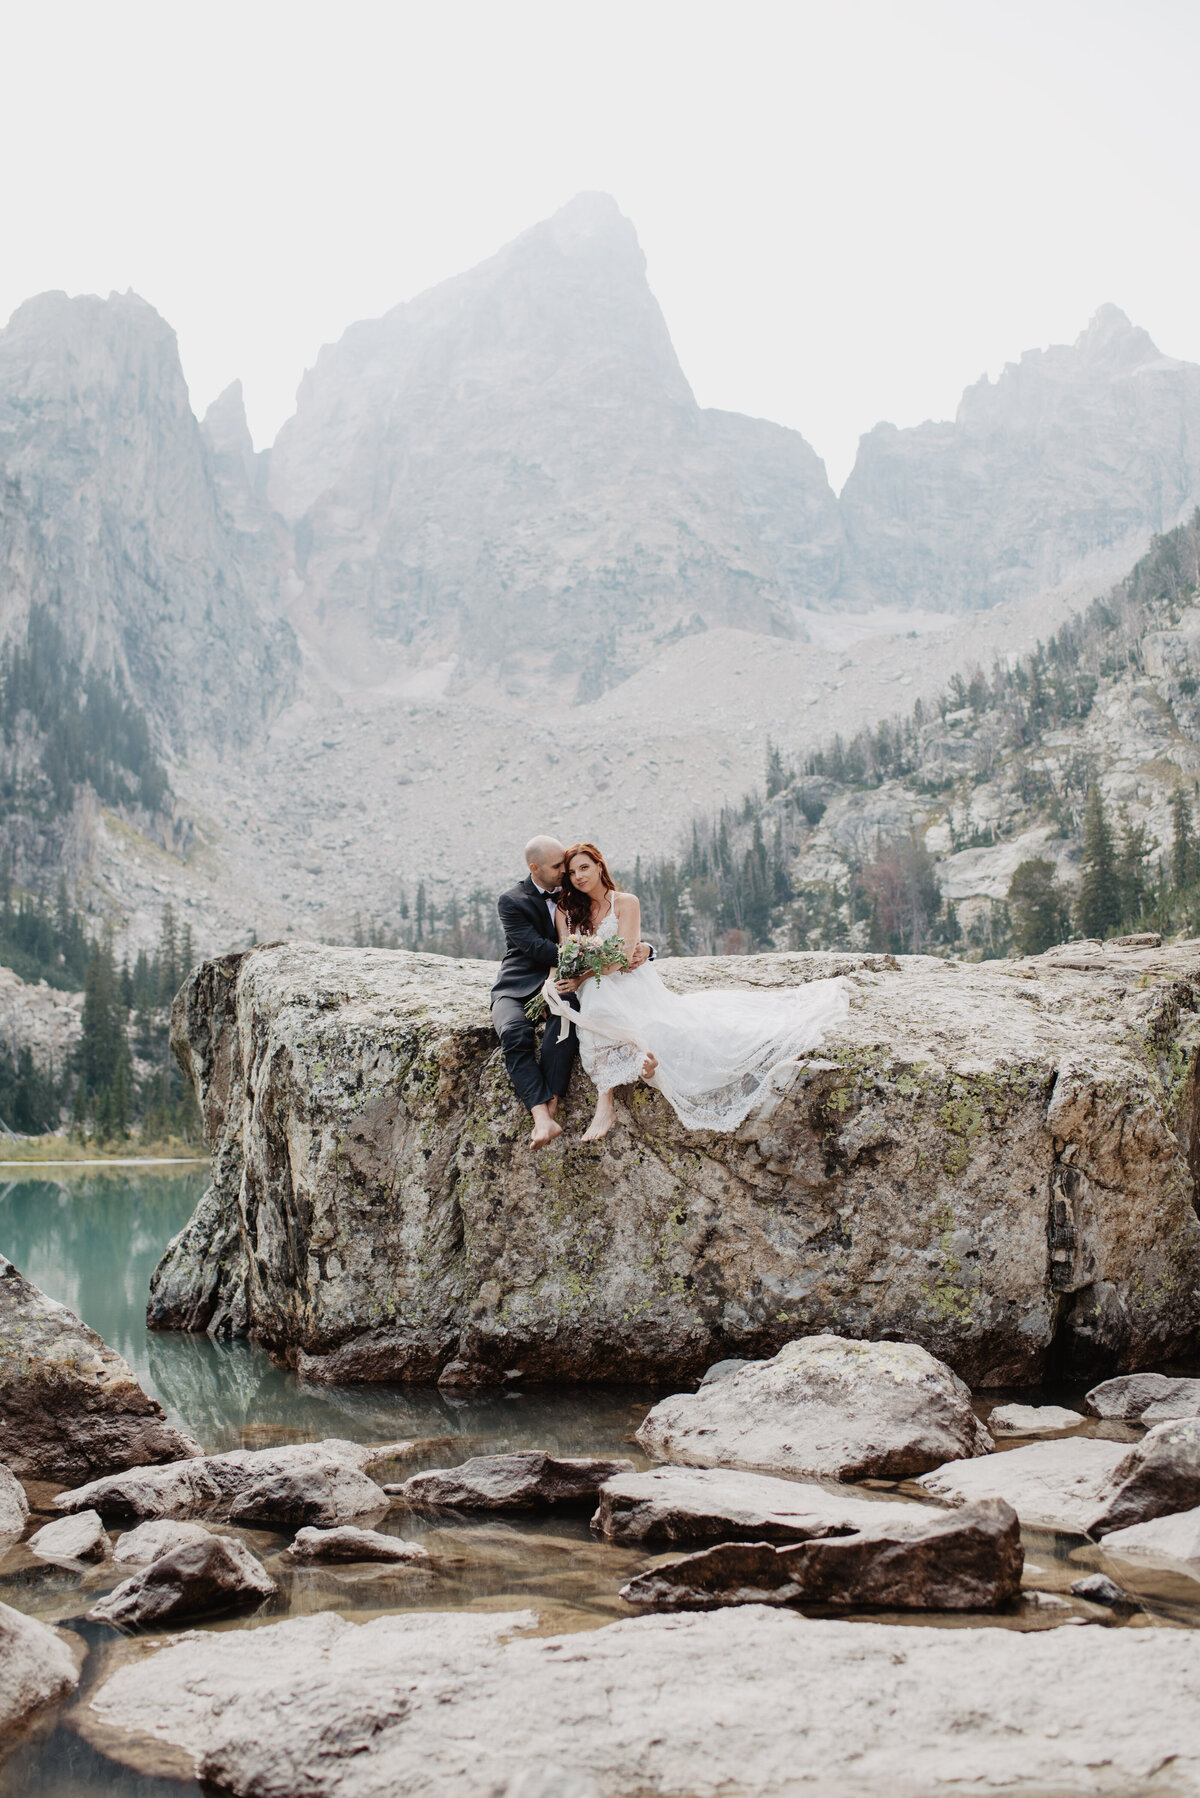 Jackson Hole photographers capture groom hugging bride on boulder in Grand Teton National Park